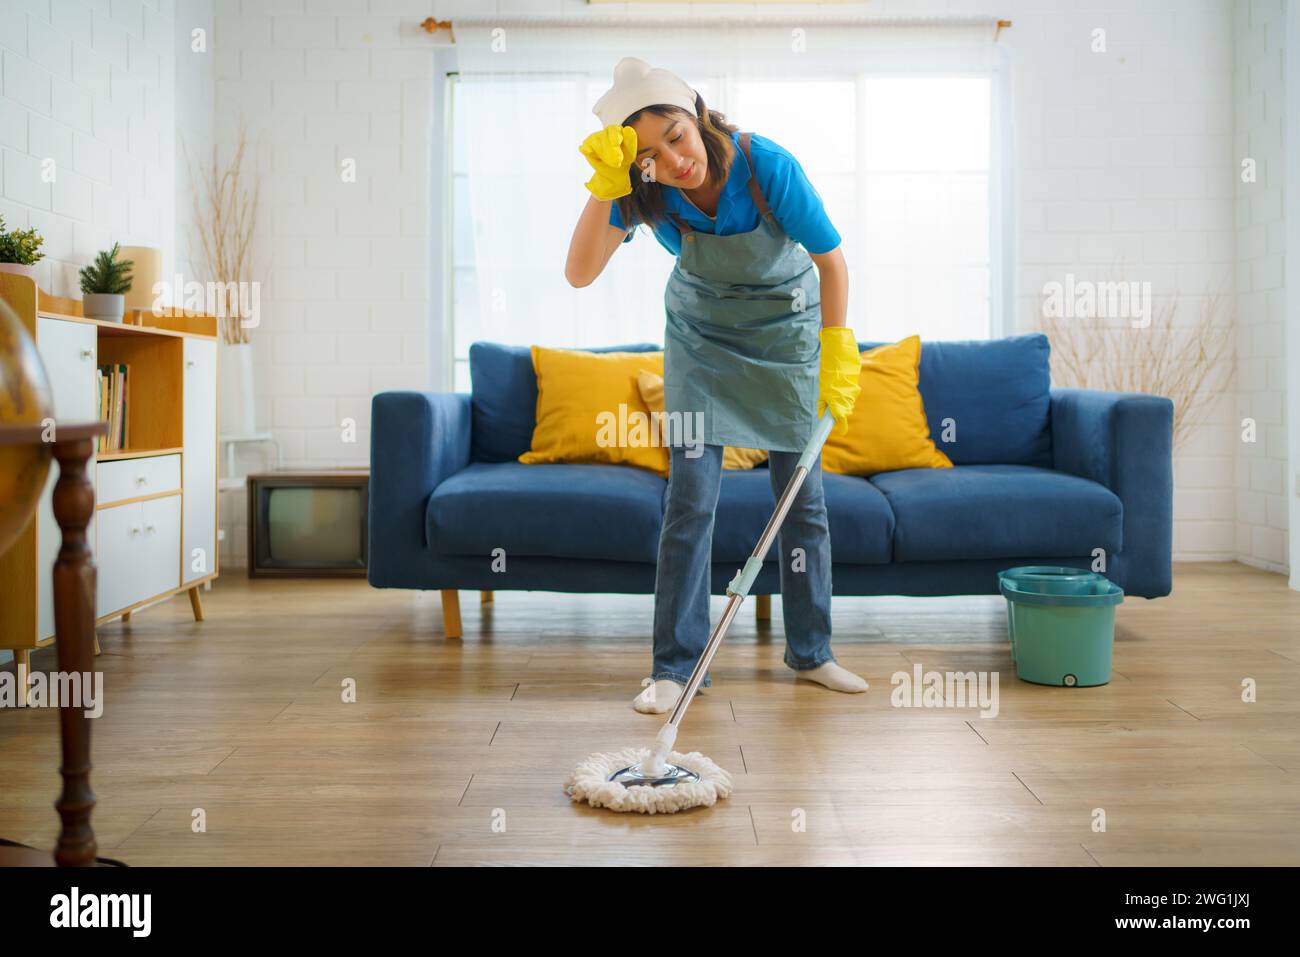 Femme de ménage comme elle nettoie lamentablement le sol dans le salon. Cette image reflète le travail acharné et le dévouement de l'équipe de nettoyage, mettant en valeur le c Banque D'Images